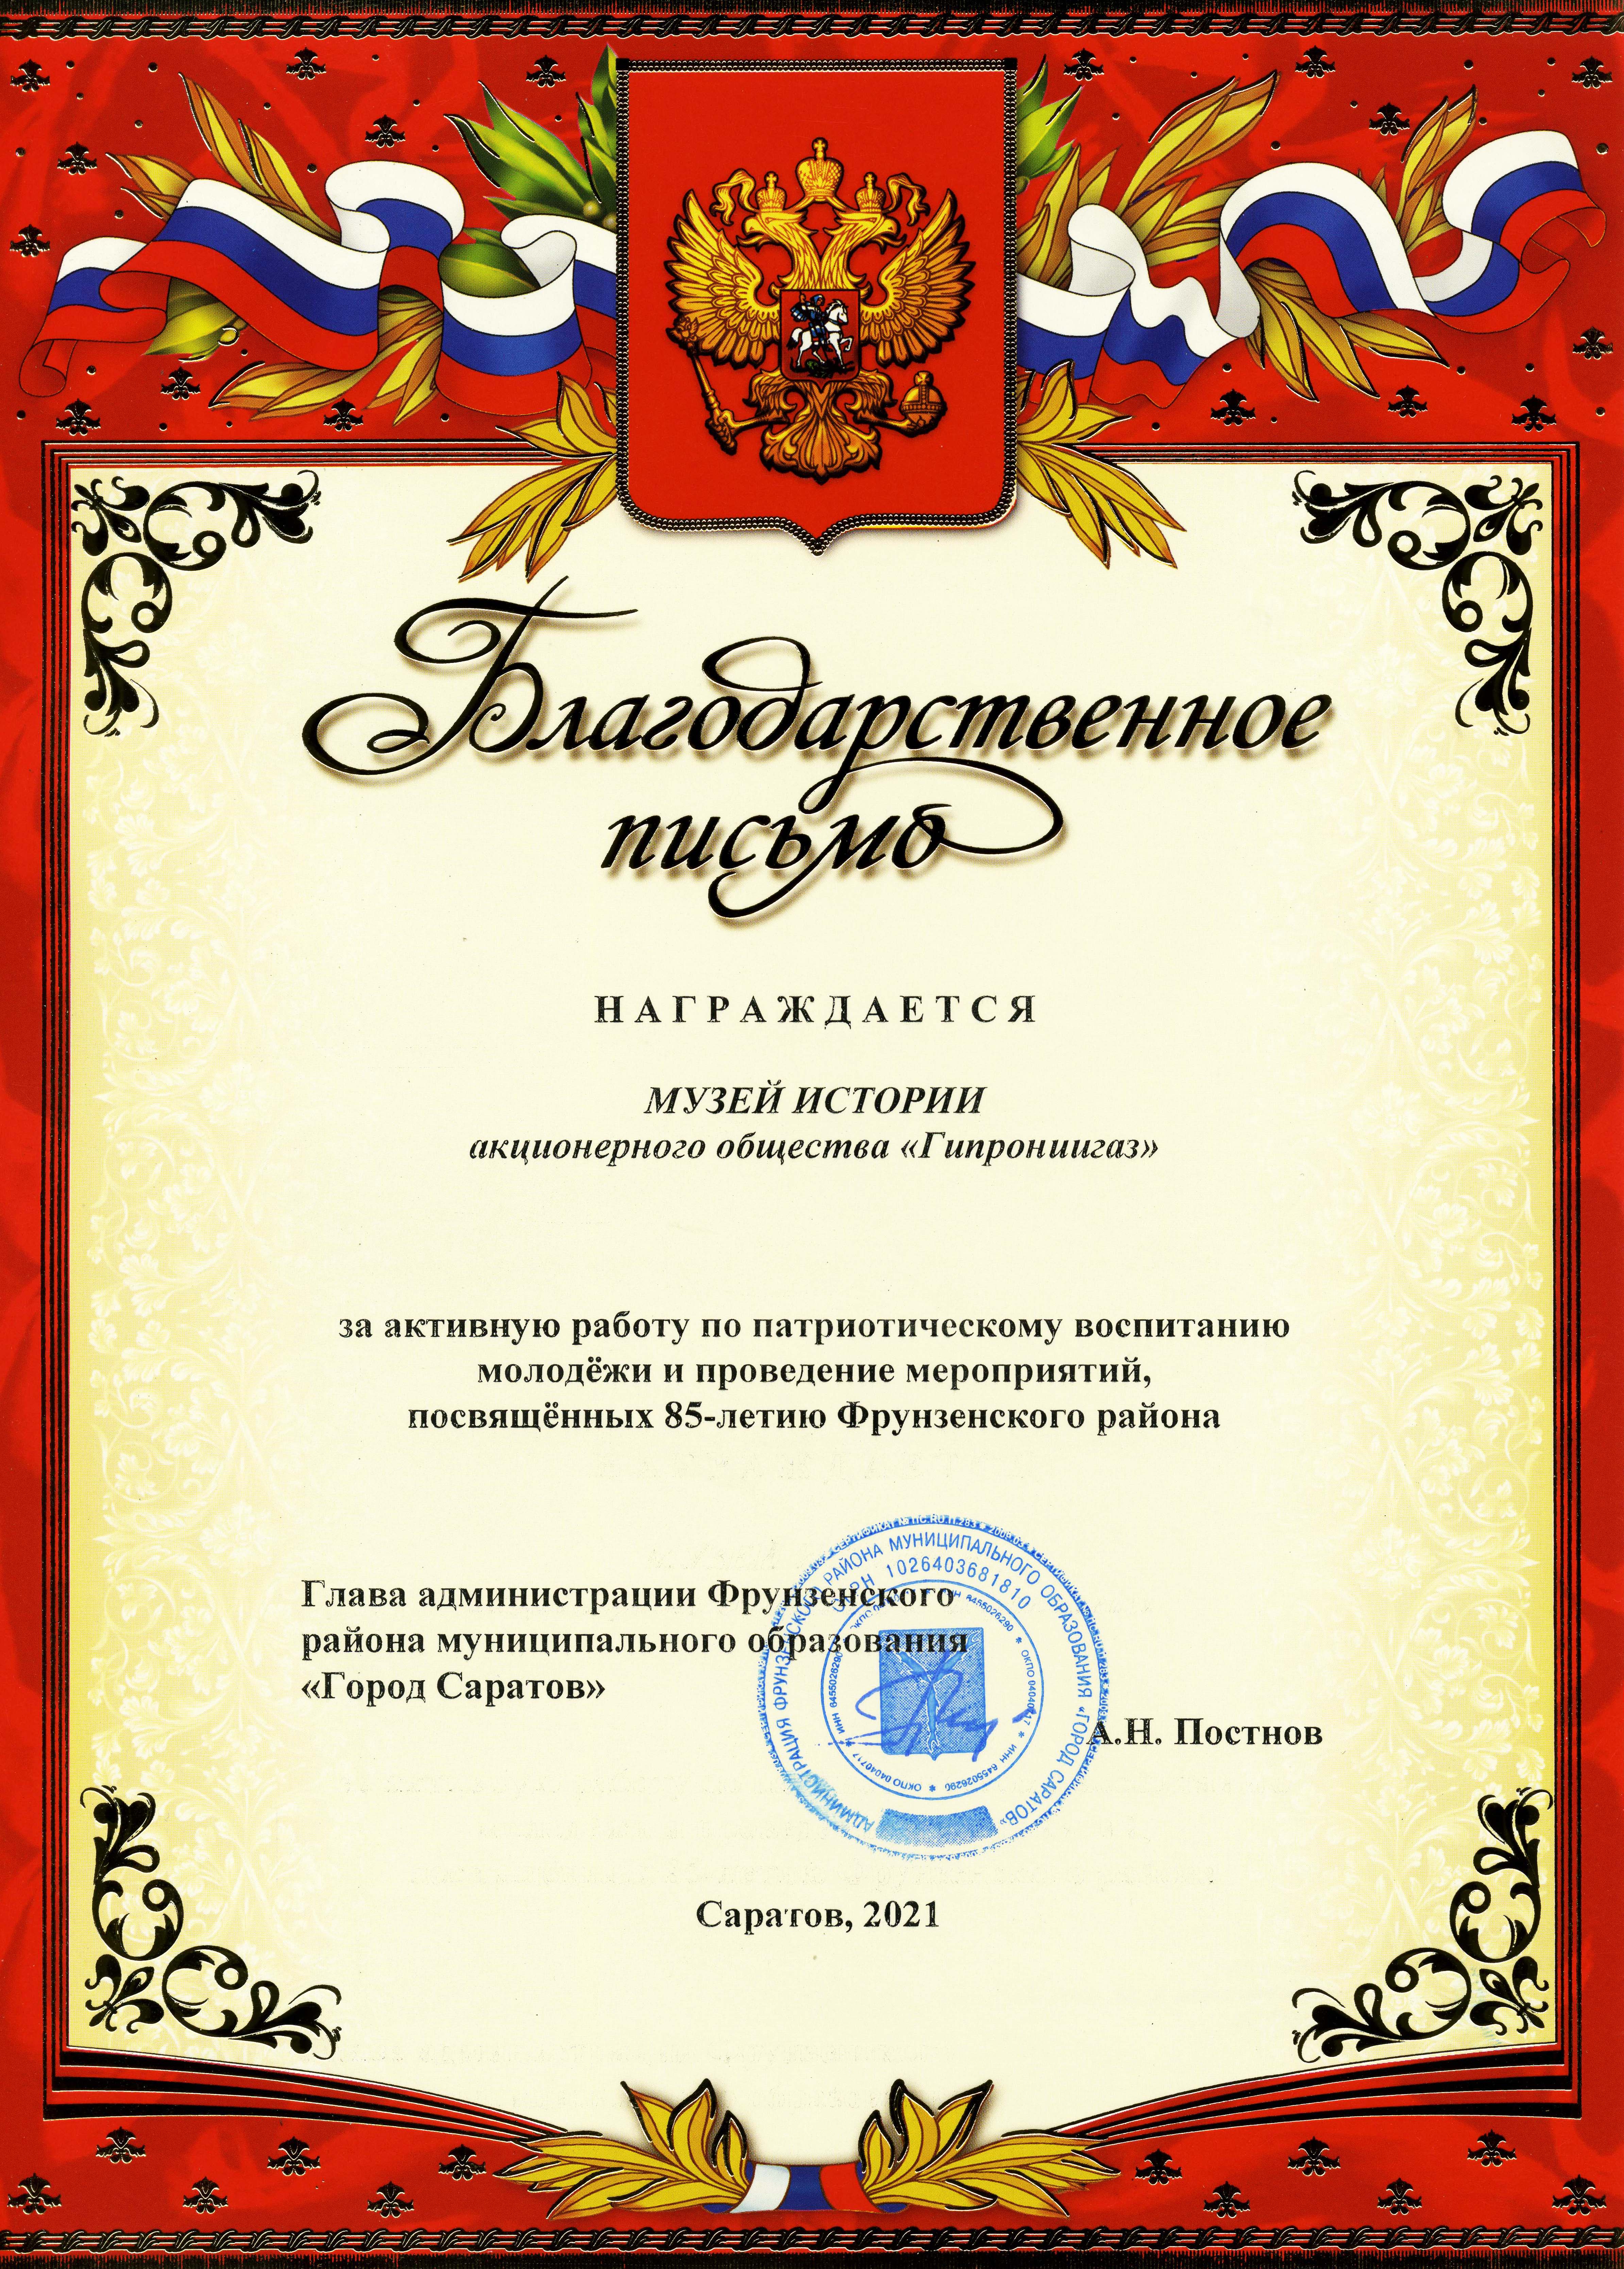 Музей истории АО "Гипрониигаз" награжден Благодарственным письмом Главы Администрации Фрунзенского района